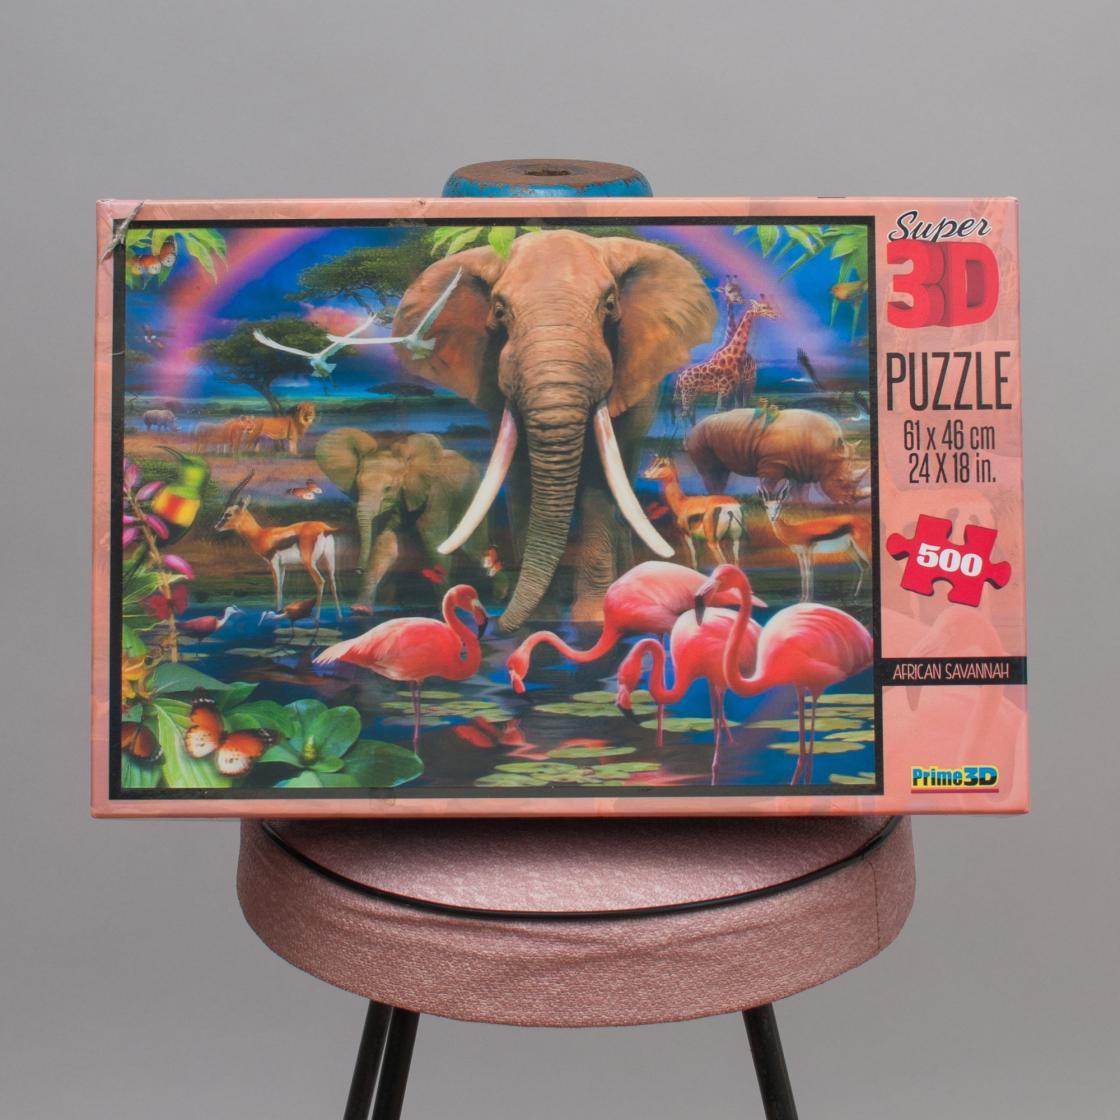 Super 3D Puzzle - African Savannah